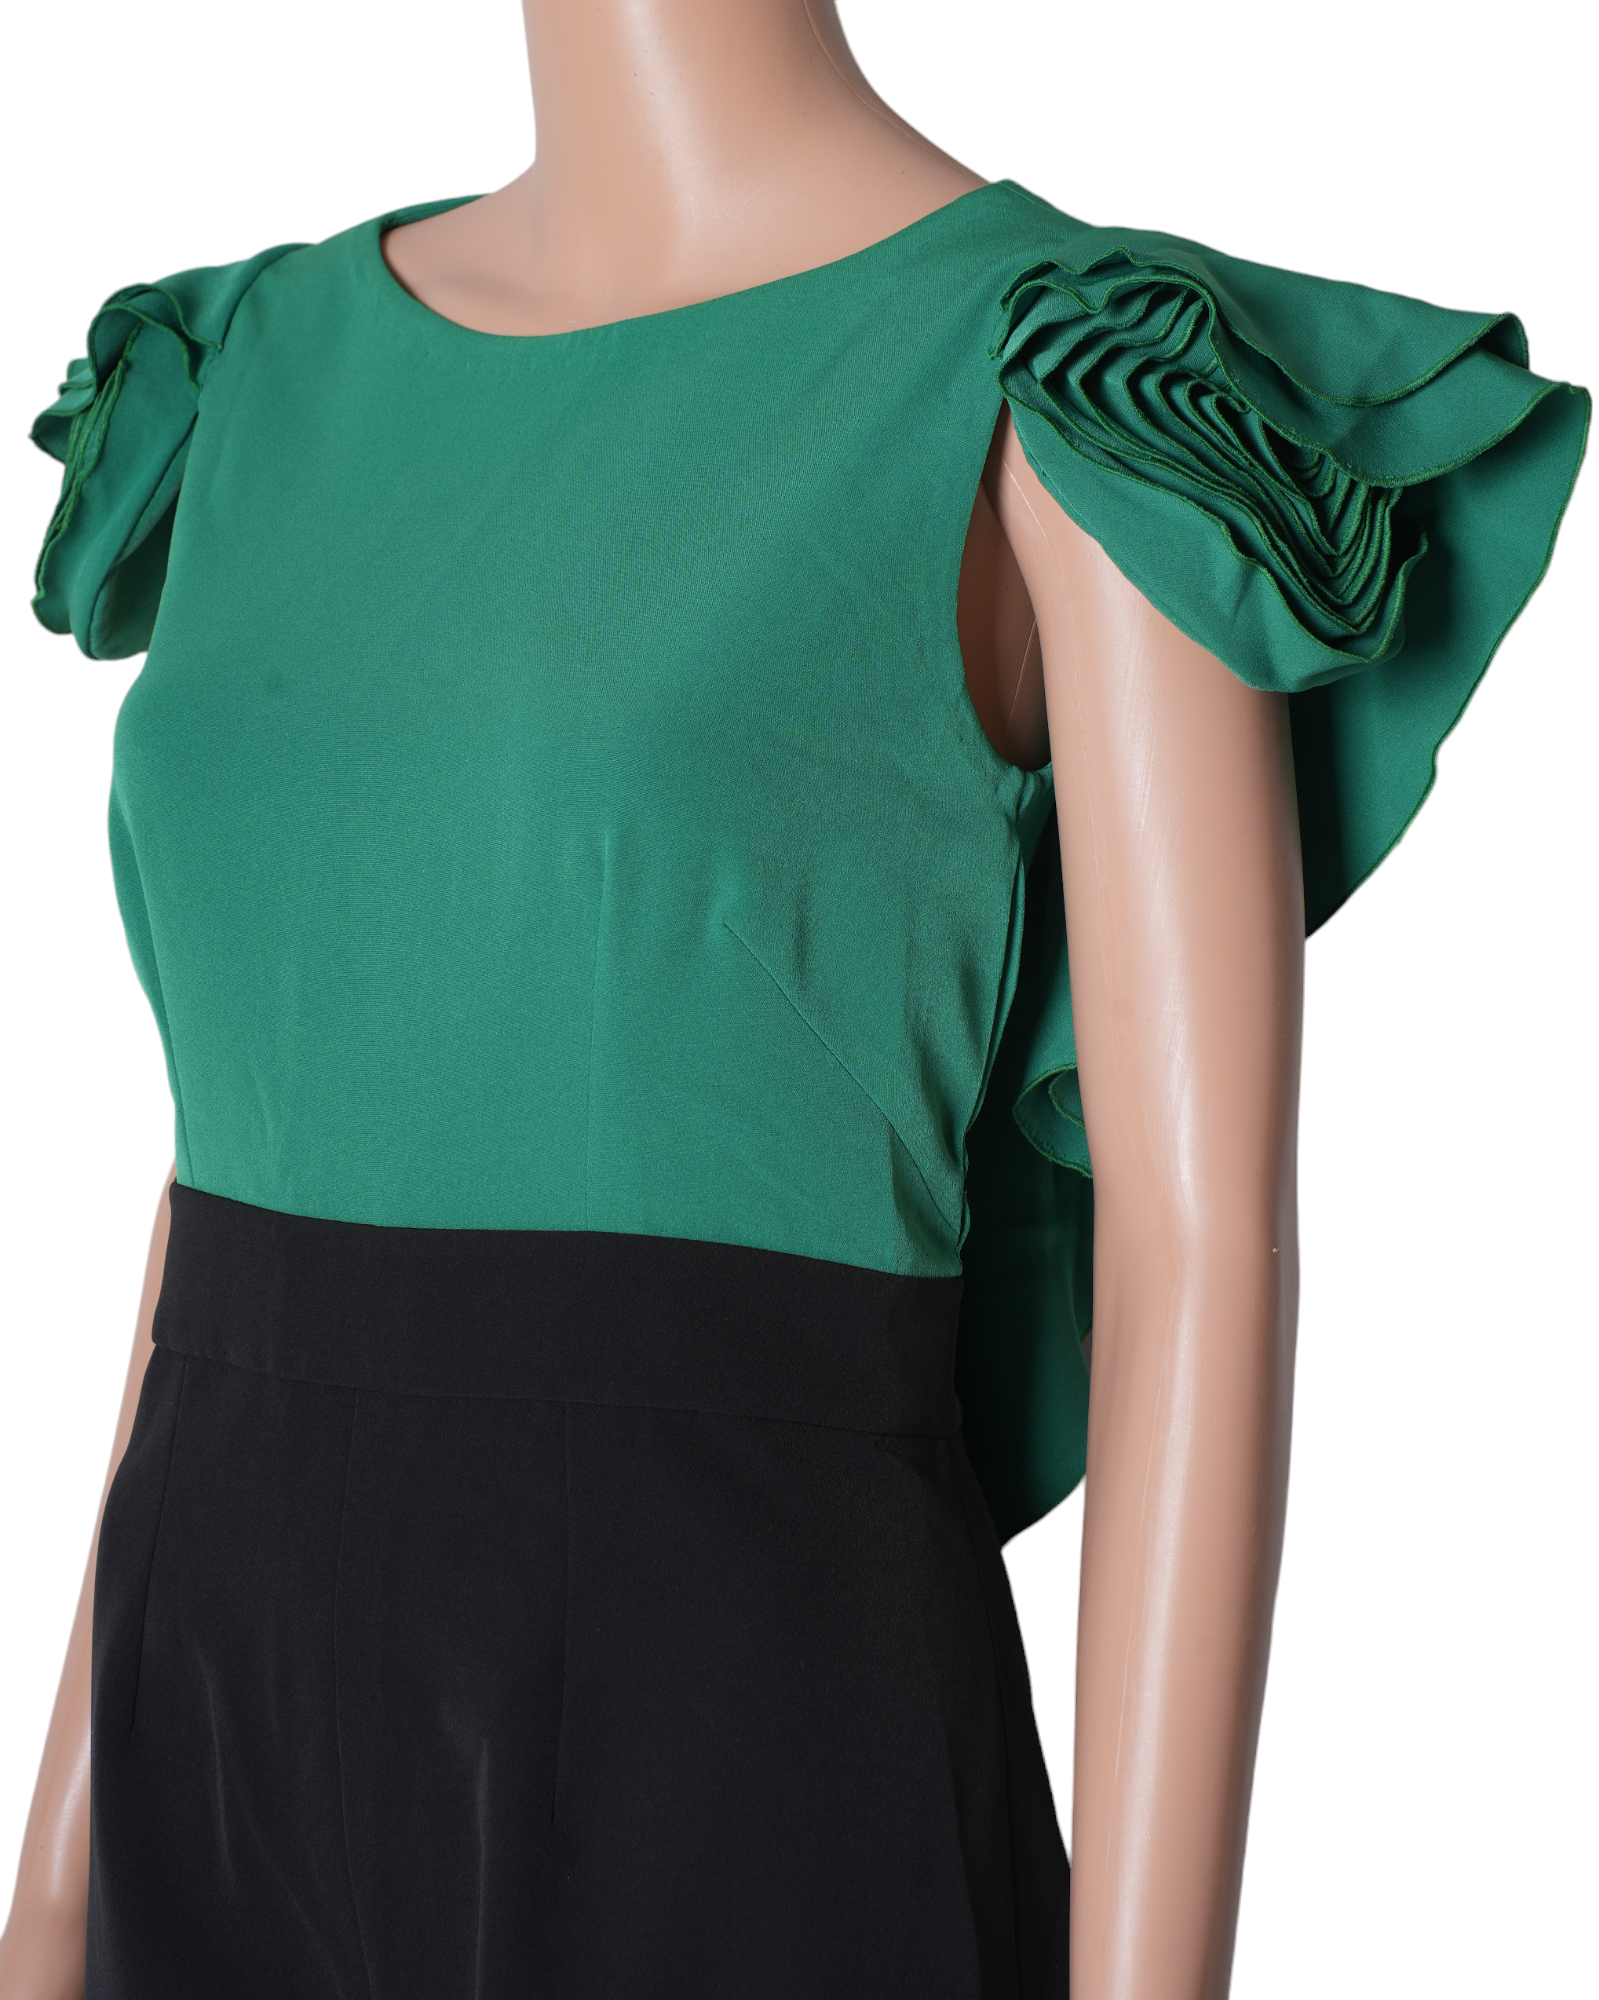 New Pranati Kejriwall Black & Green Rose Detail Jumpsuit